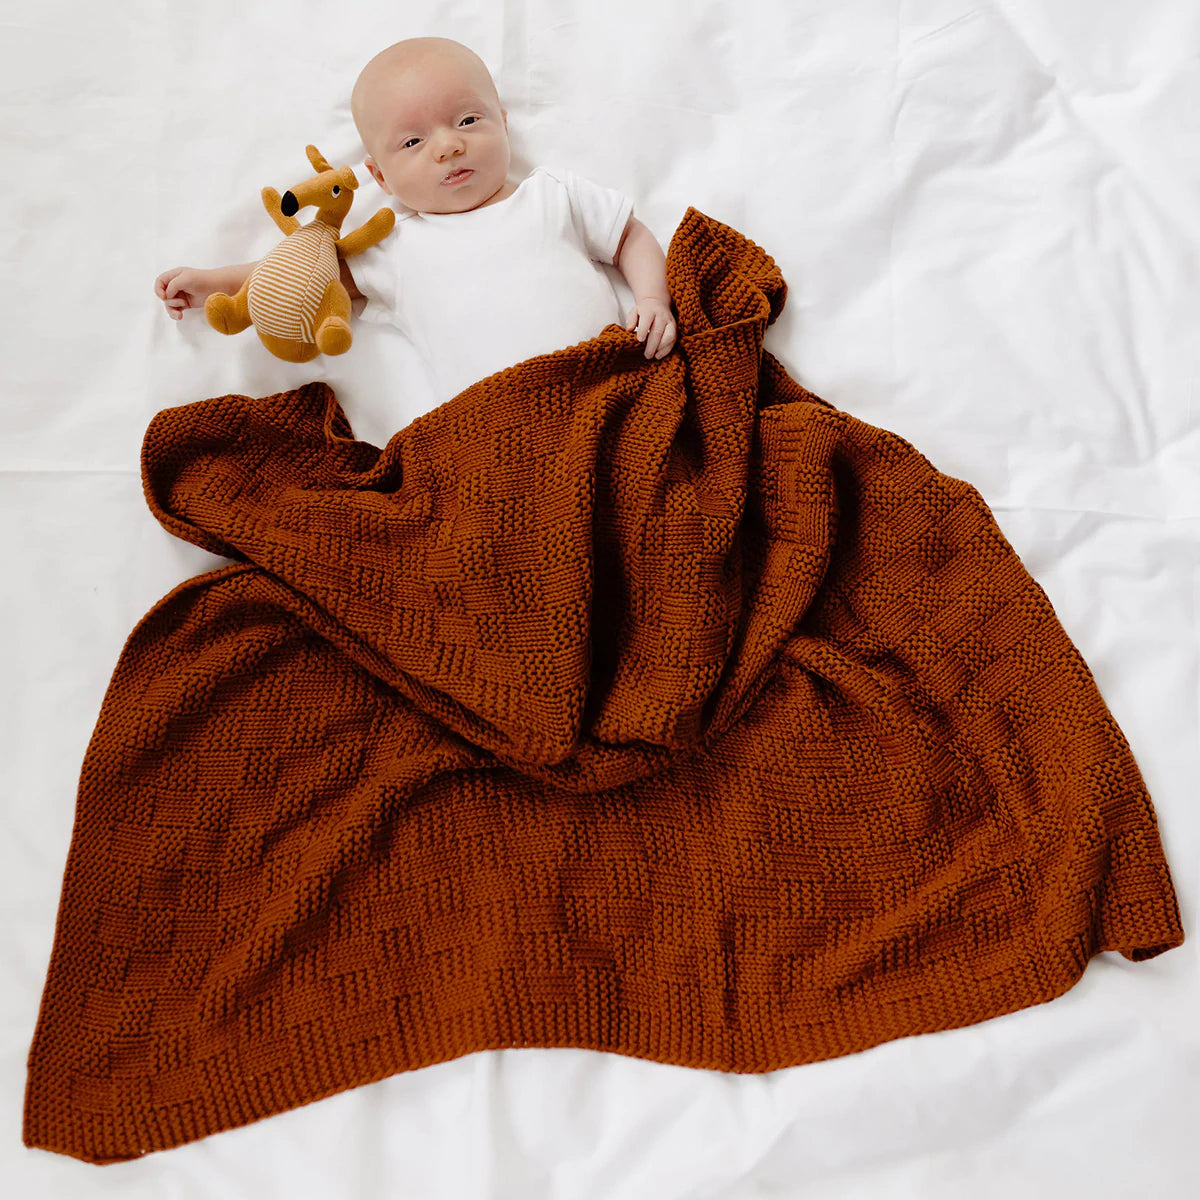 Freya Baby Blanket